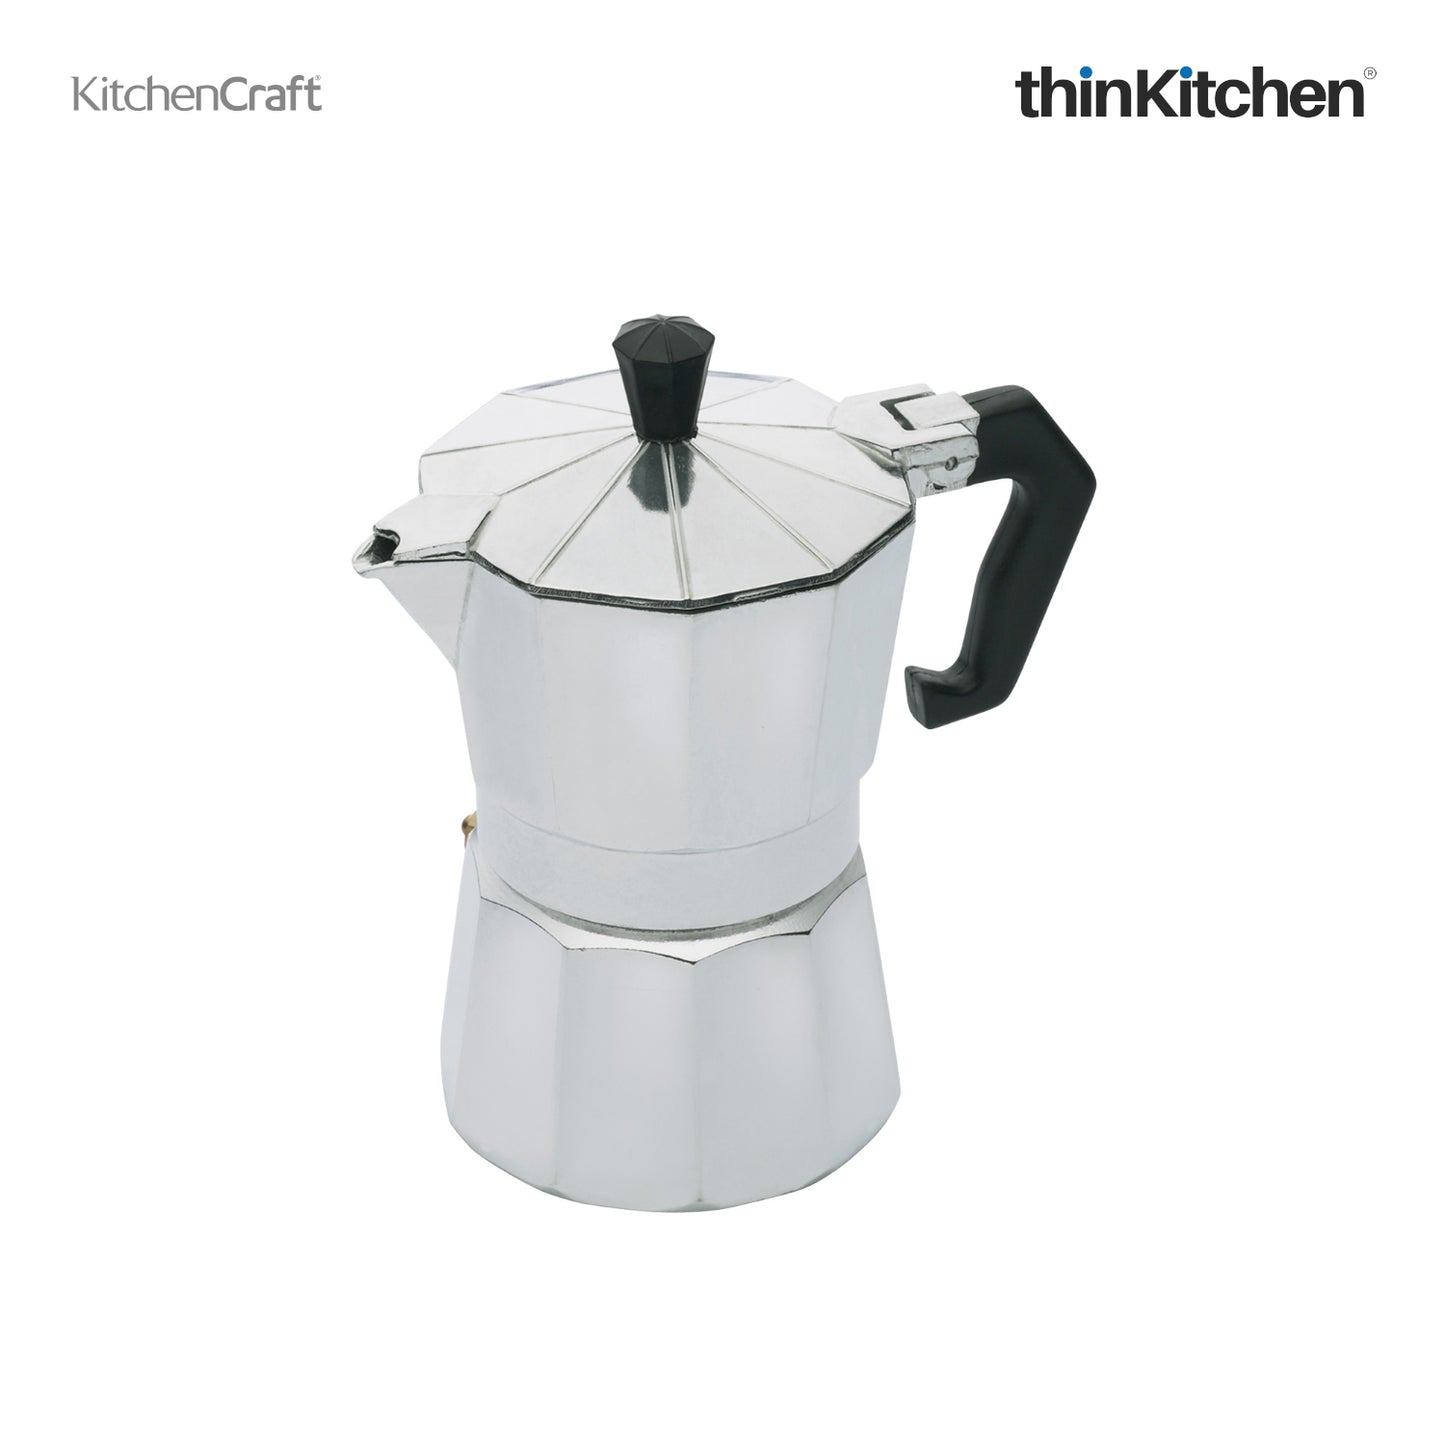 Kitchencraft Le Xpress Italian Style 3 Cup Espresso Maker